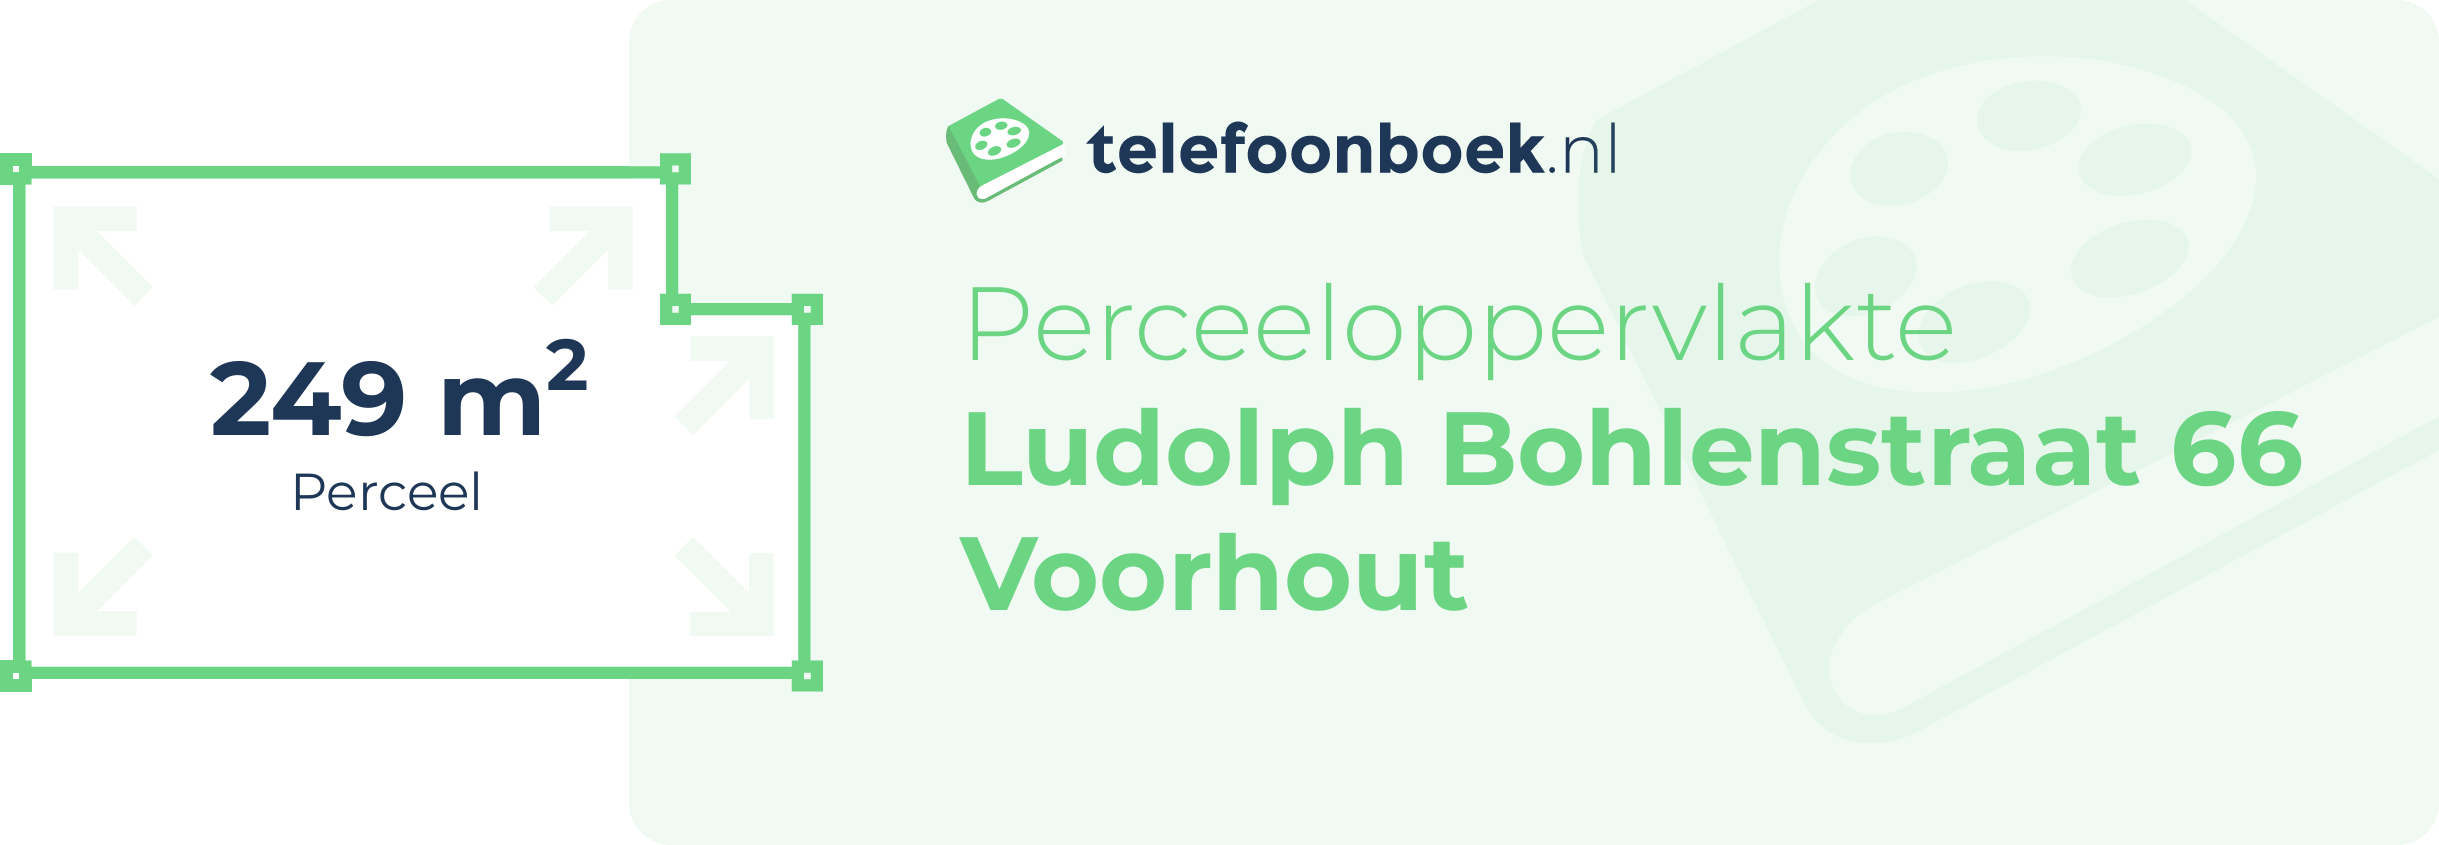 Perceeloppervlakte Ludolph Bohlenstraat 66 Voorhout